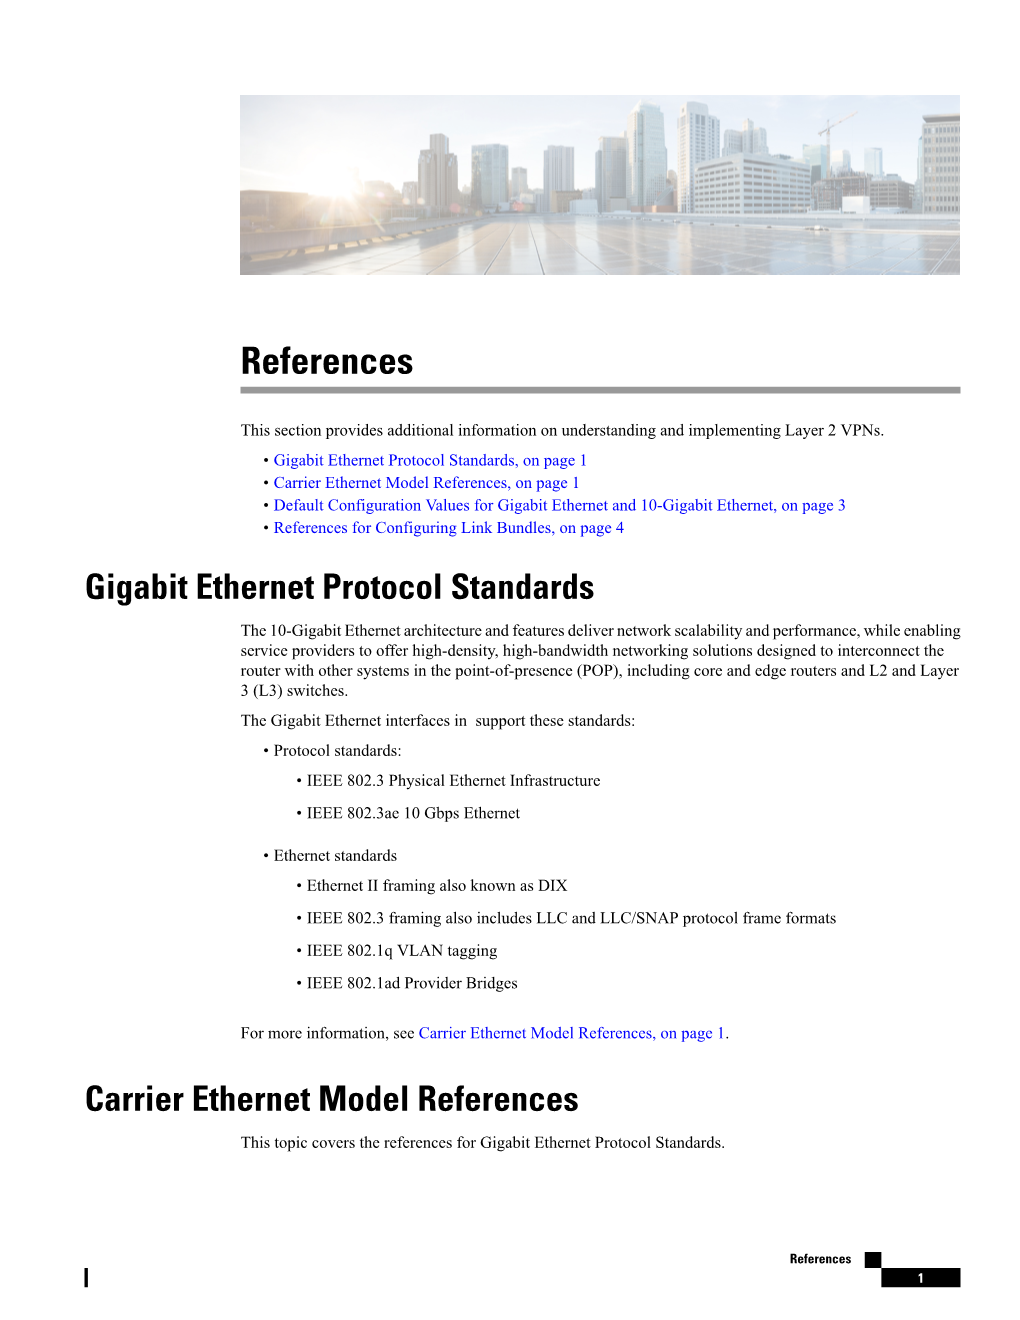 Carrier Ethernet Model References